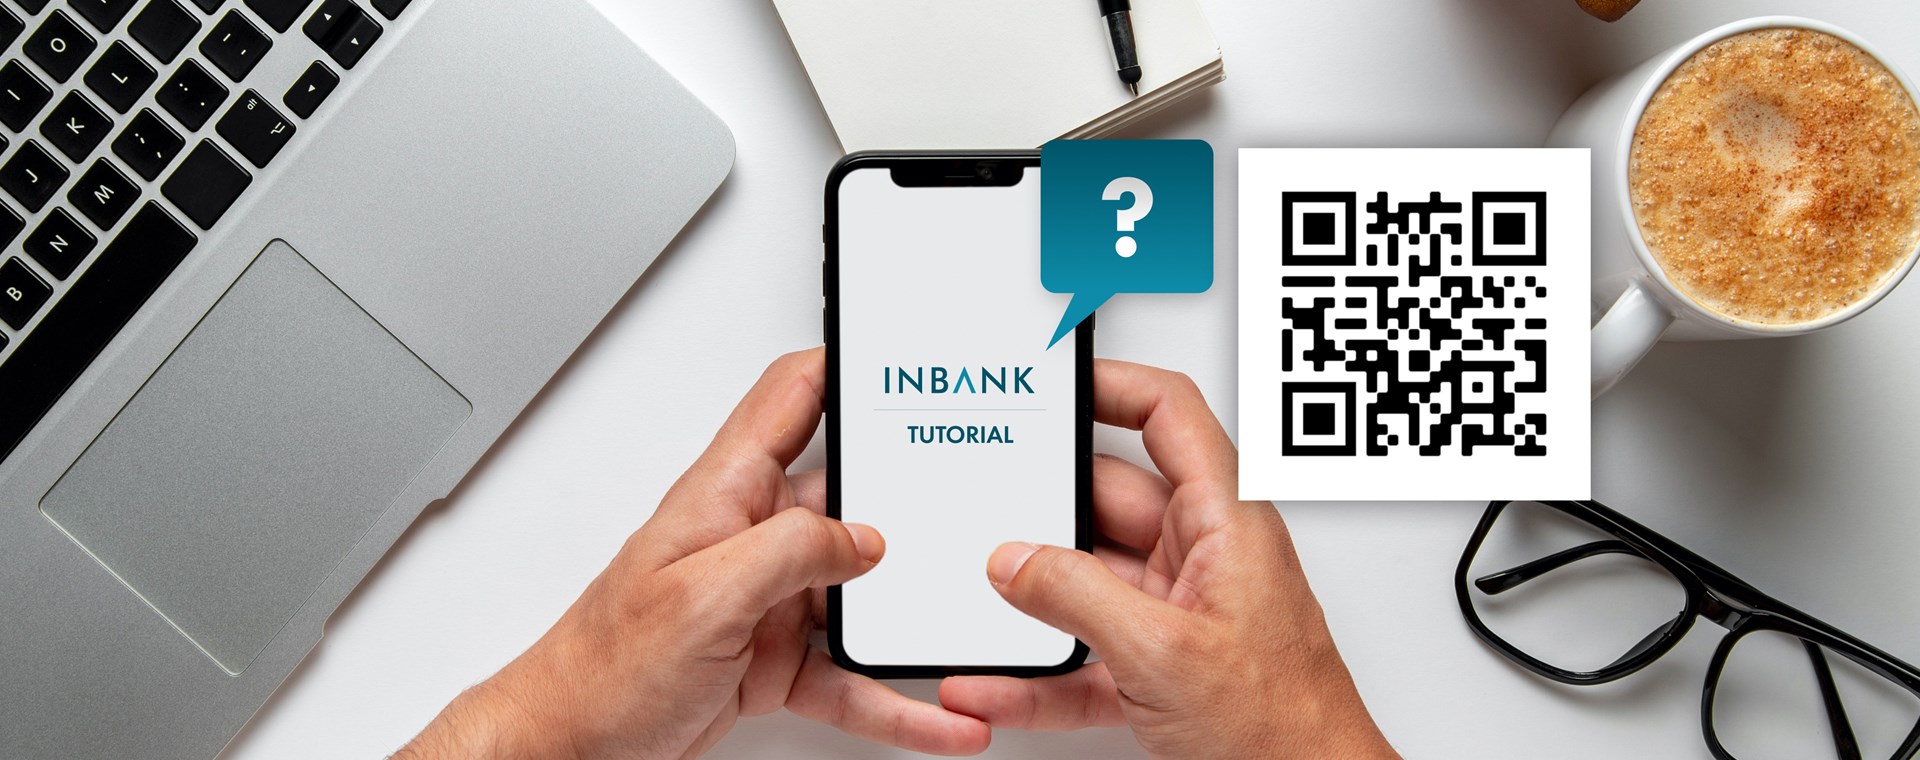 Conosci tutte le possibilità dell' app inBank per gestire comodamente 